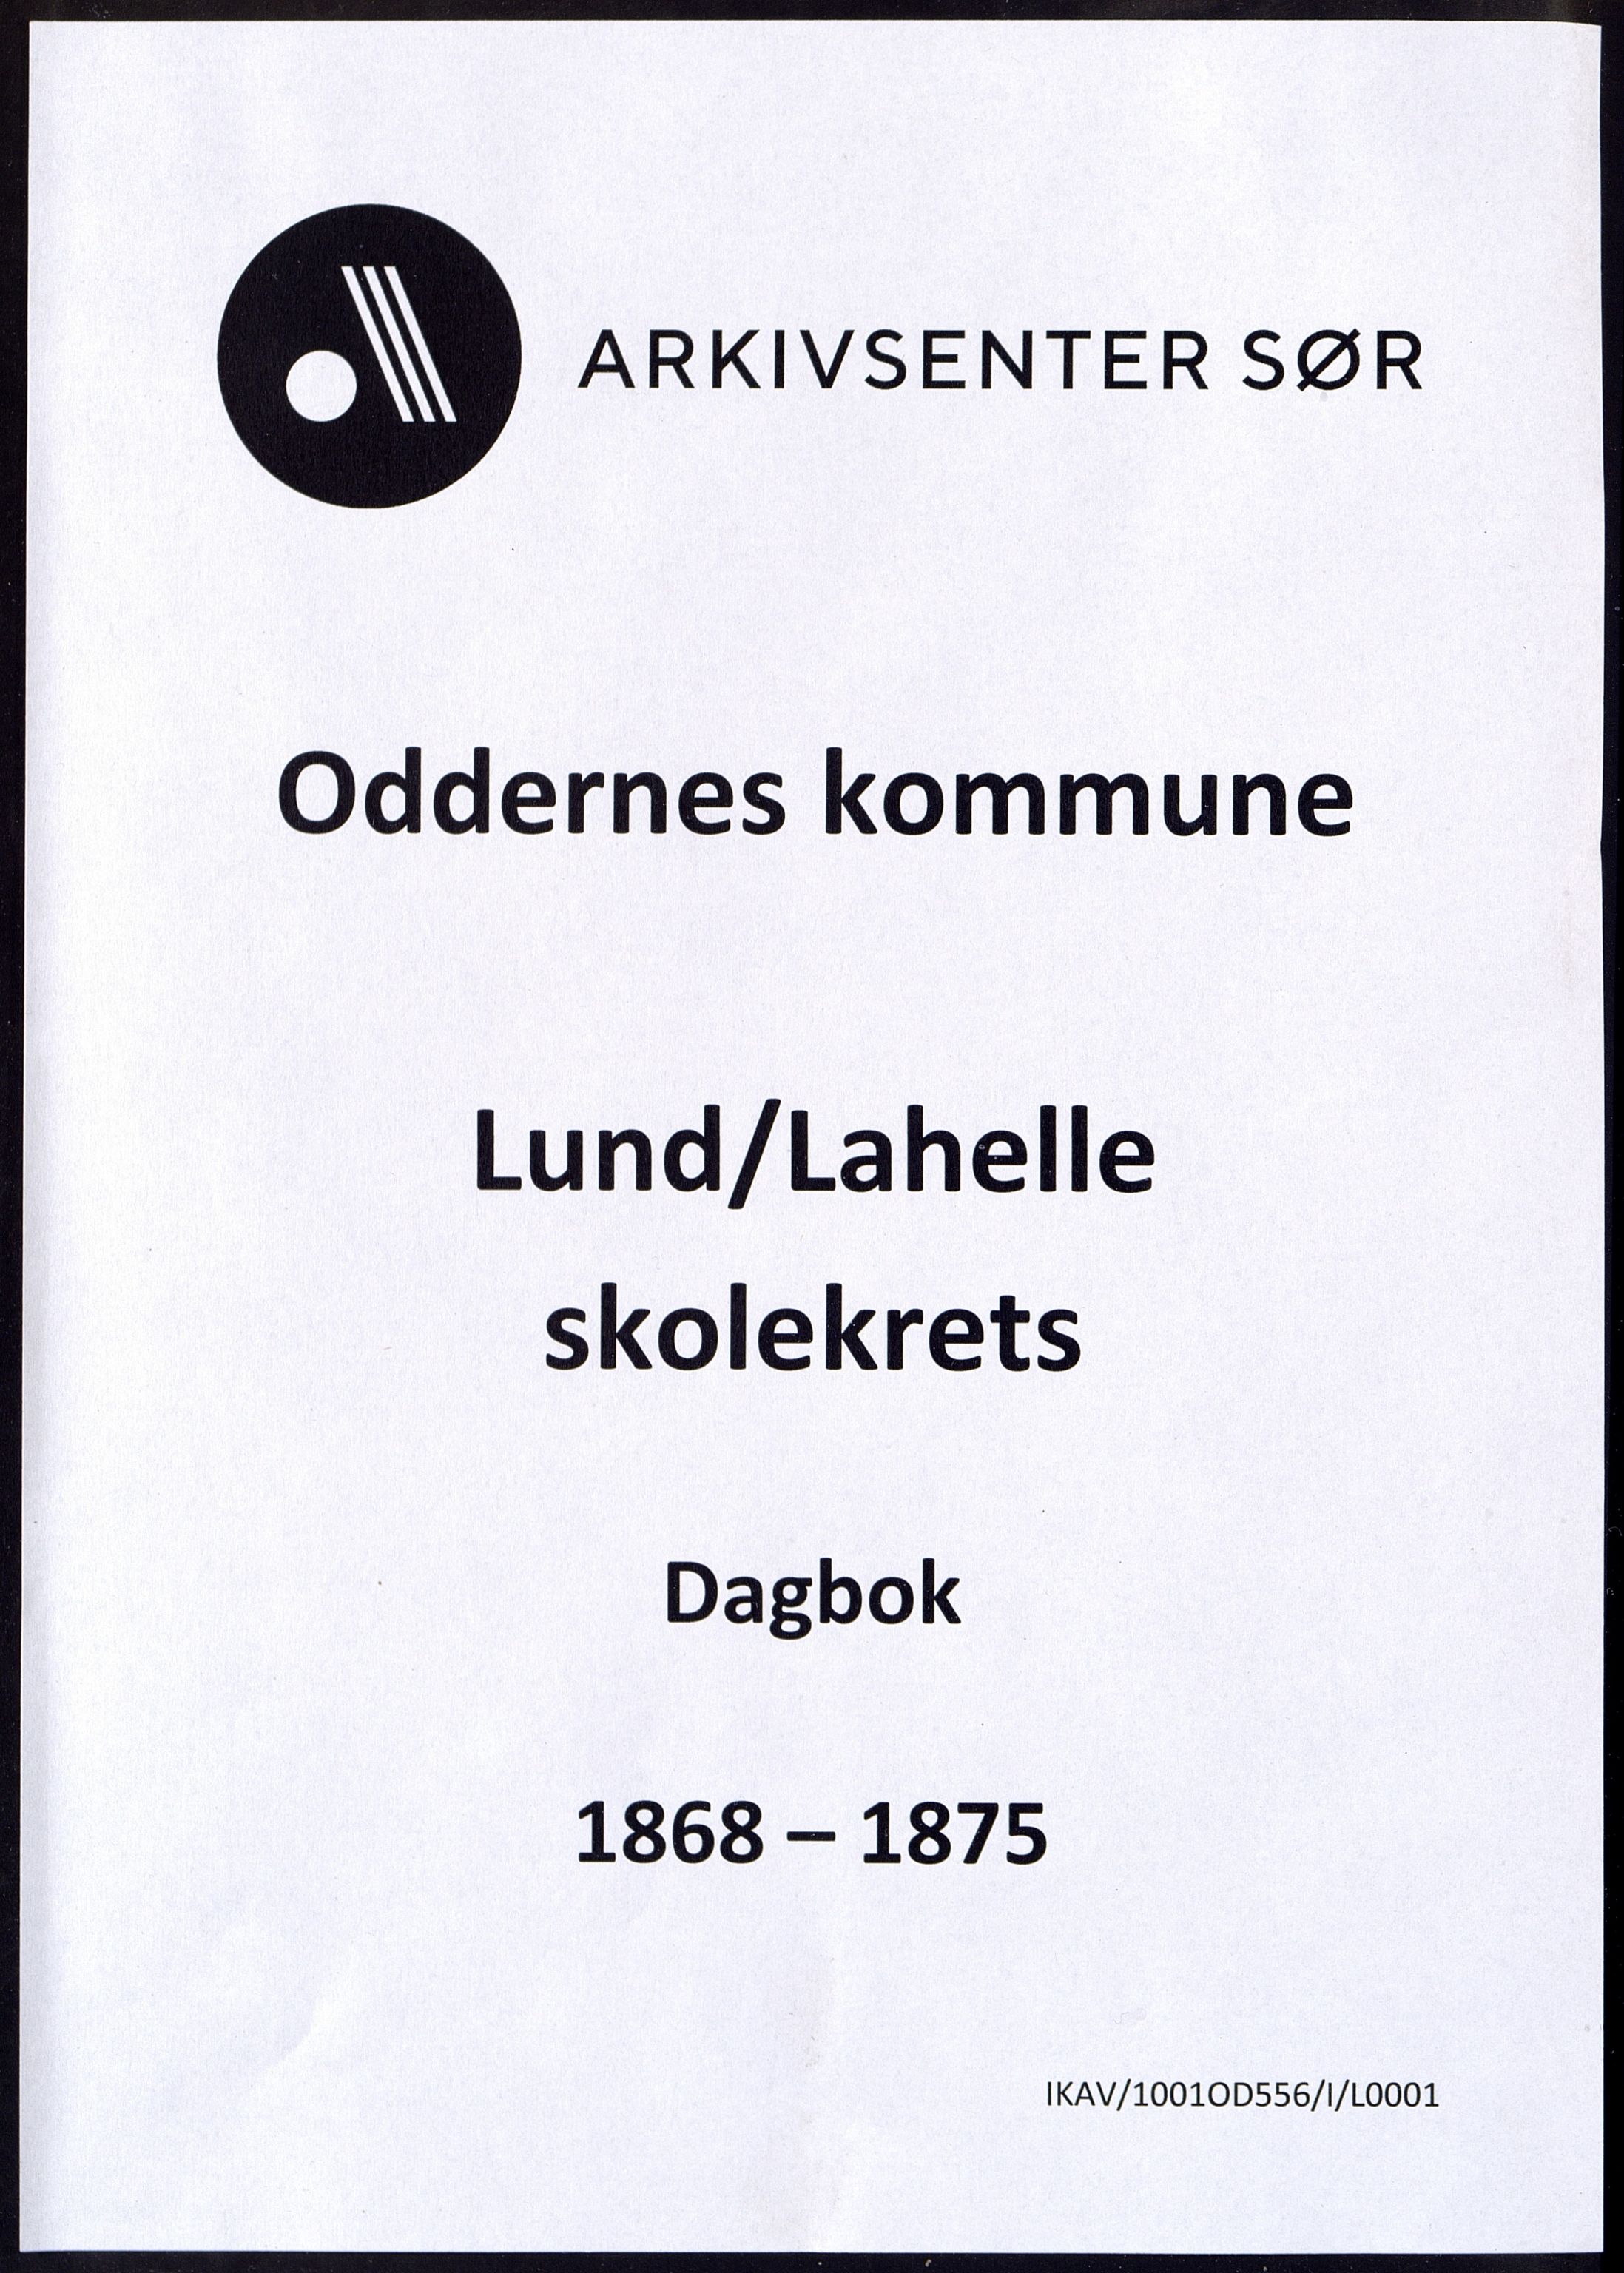 Oddernes kommune - Lund/Lahelle skolekrets, IKAV/1001OD556/I/L0001: Dagbok - Lund/Lahelle skole, 1868-1875